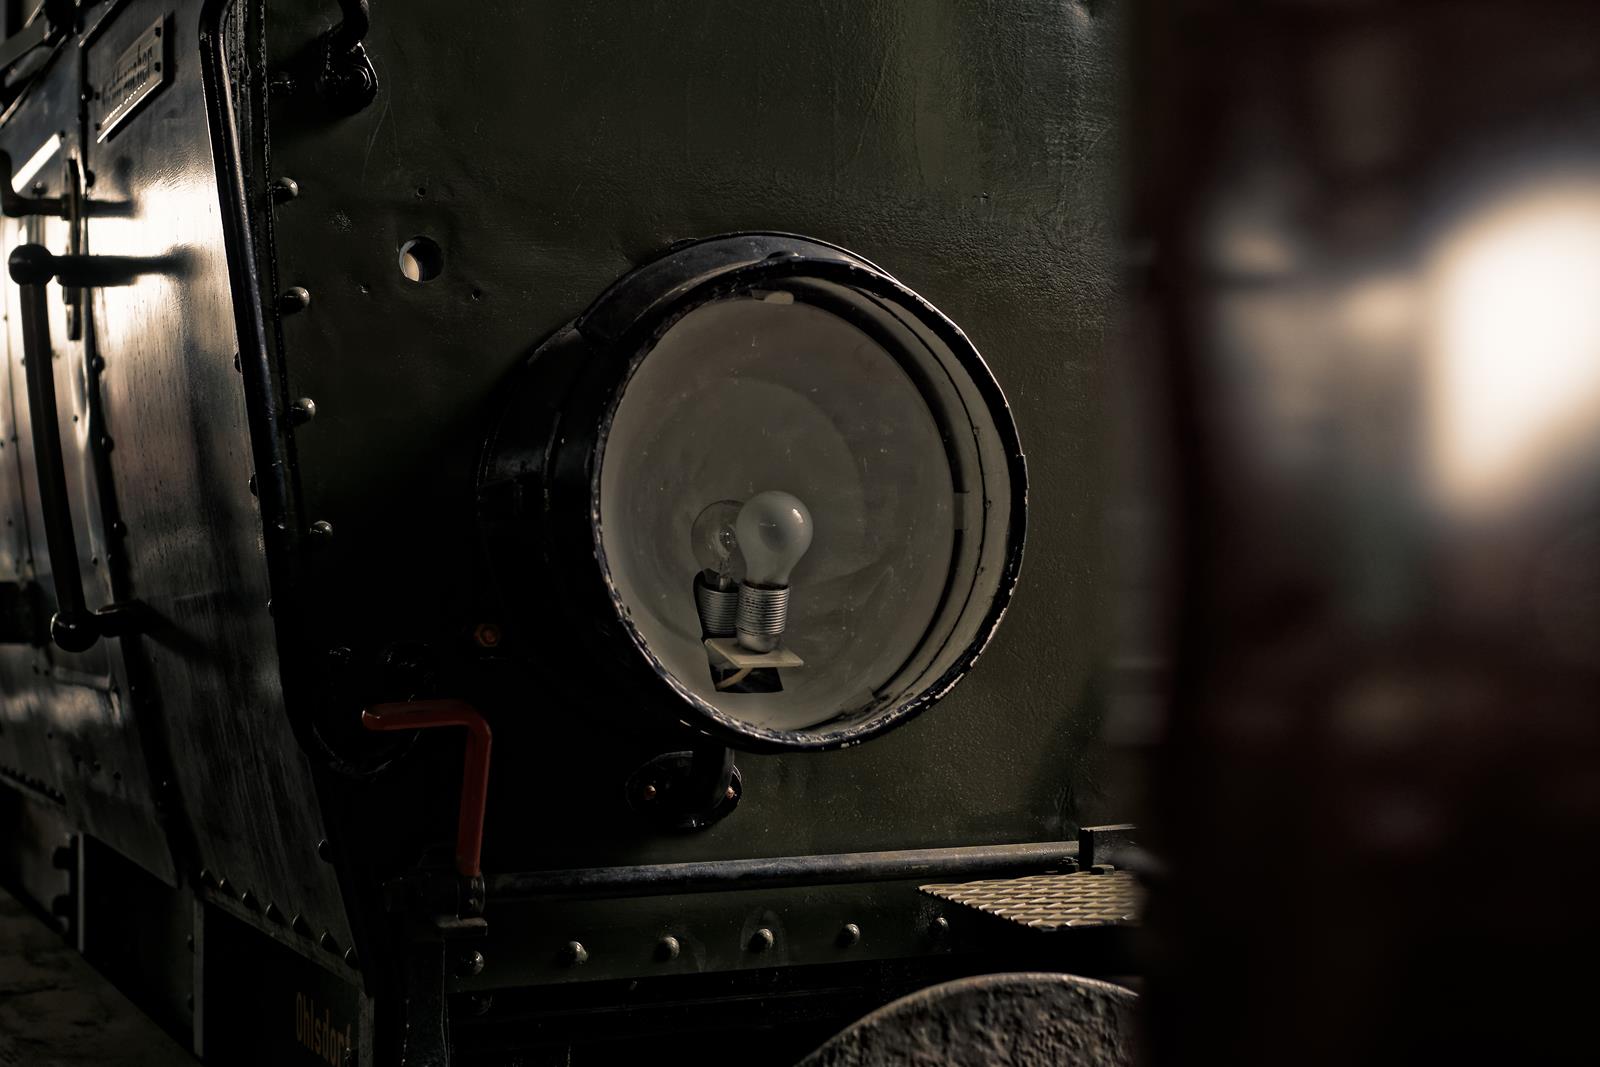 Alter Bahnlampe an einem Waggon. Schienfahrzeuge fotografiert von Danny Koerber für Sehnsucht der Augen.